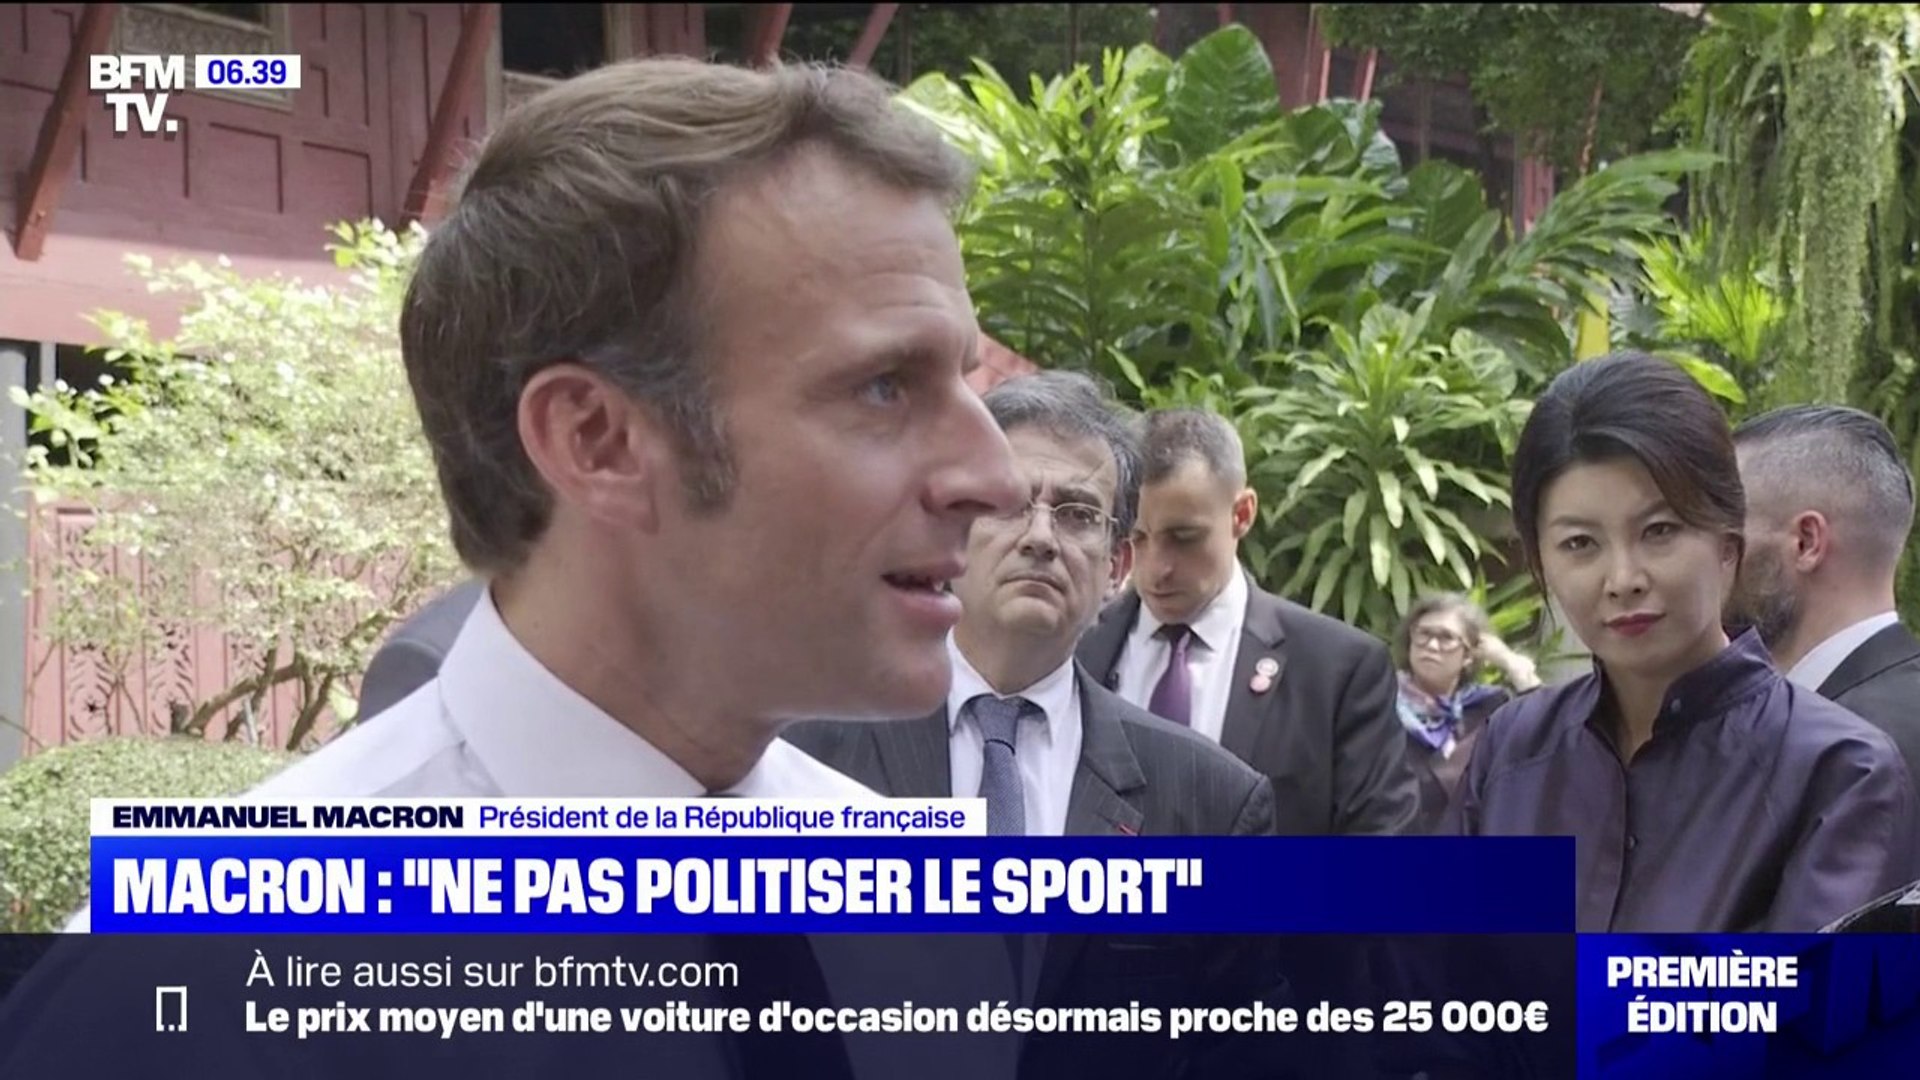 Il ne faut pas politiser le sport": Emmanuel Macron répond aux critiques  sur le Mondial au Qatar - Vidéo Dailymotion